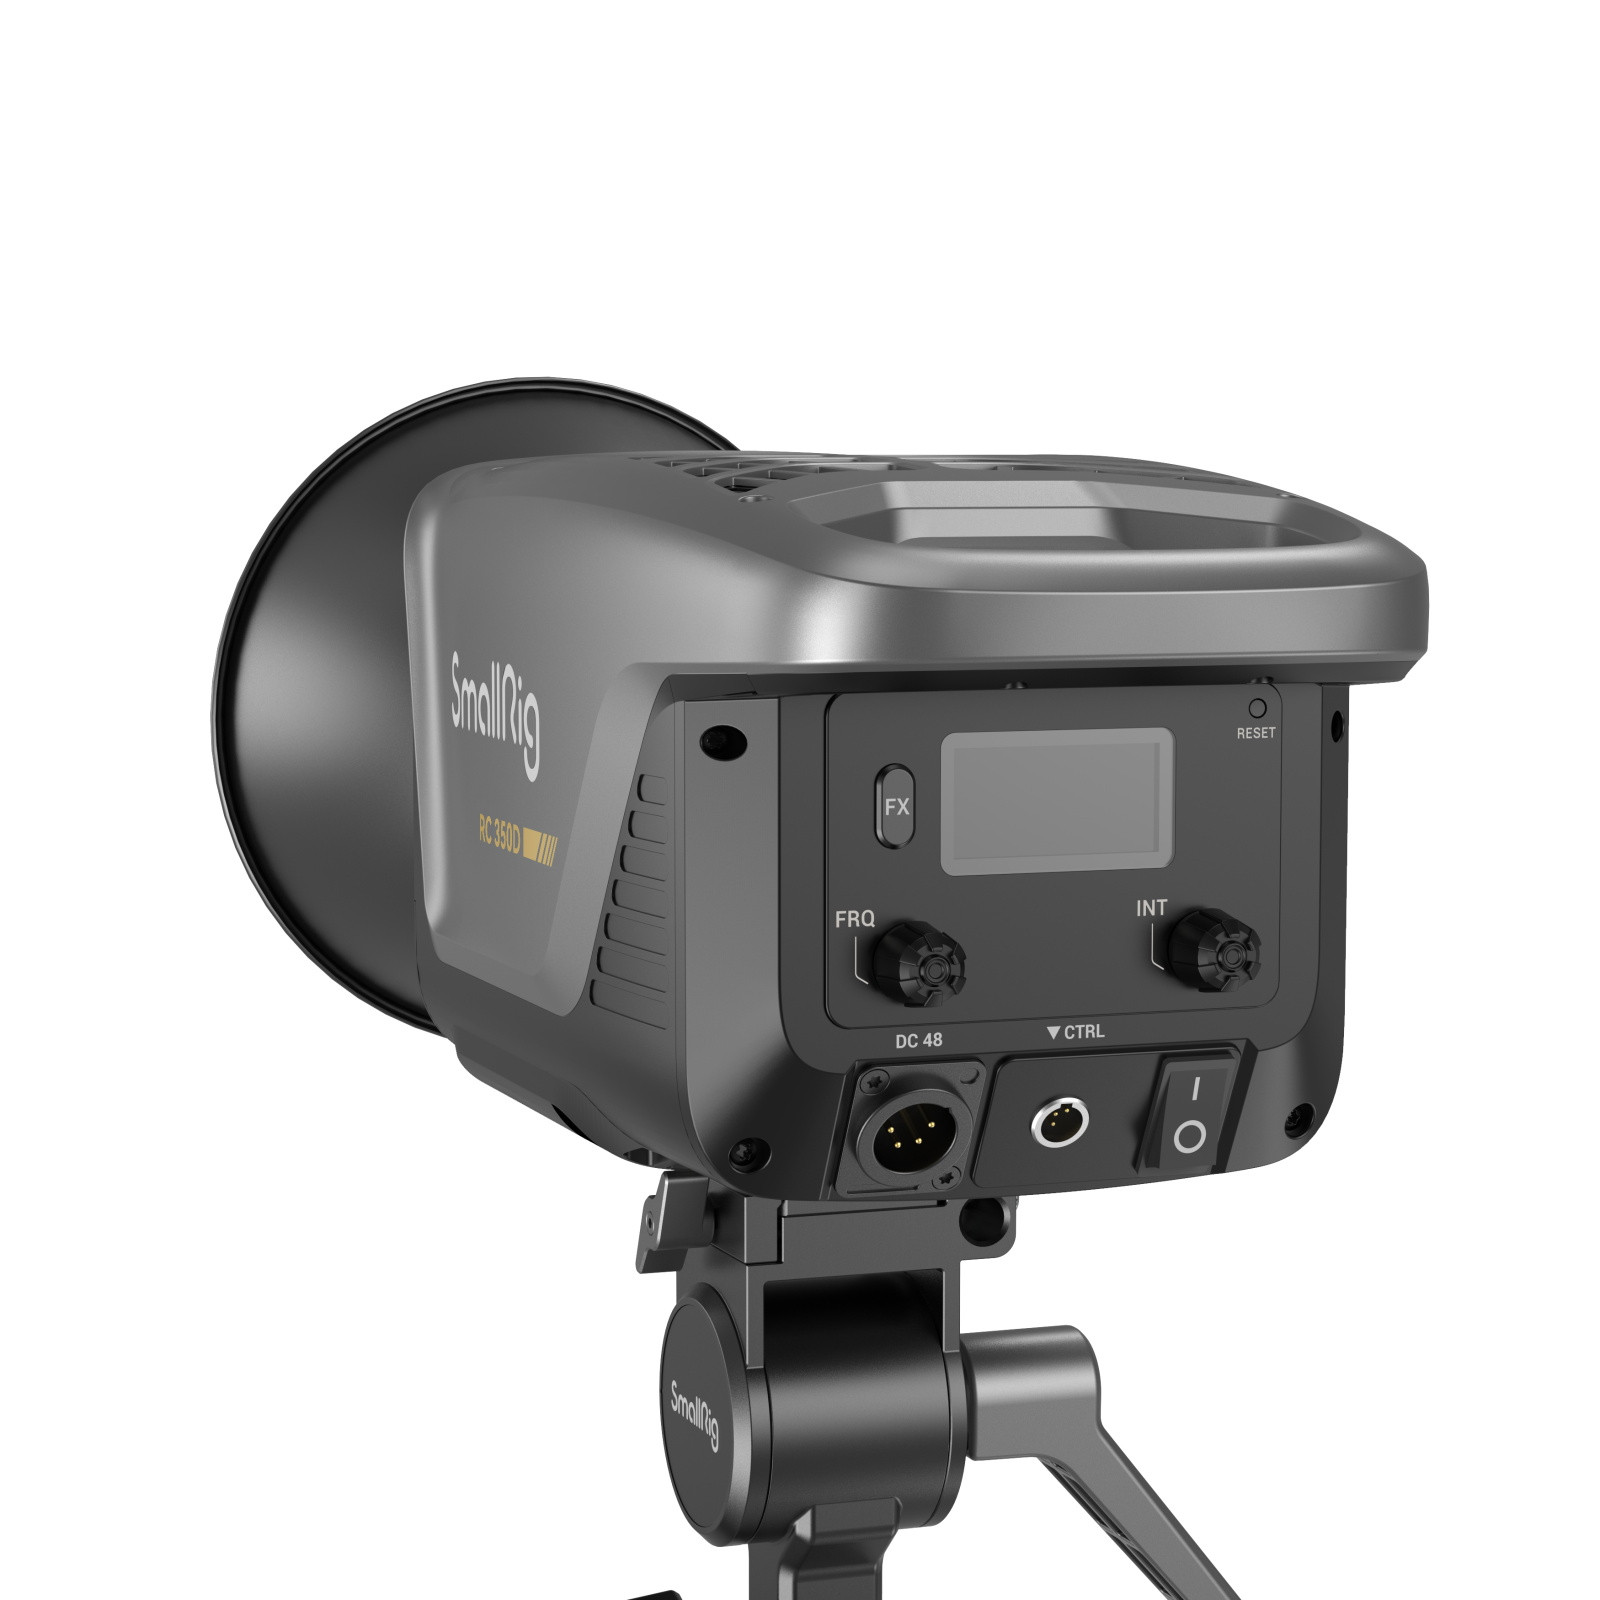 SmallRig RC350D COB LED Video Light (EU) 3961